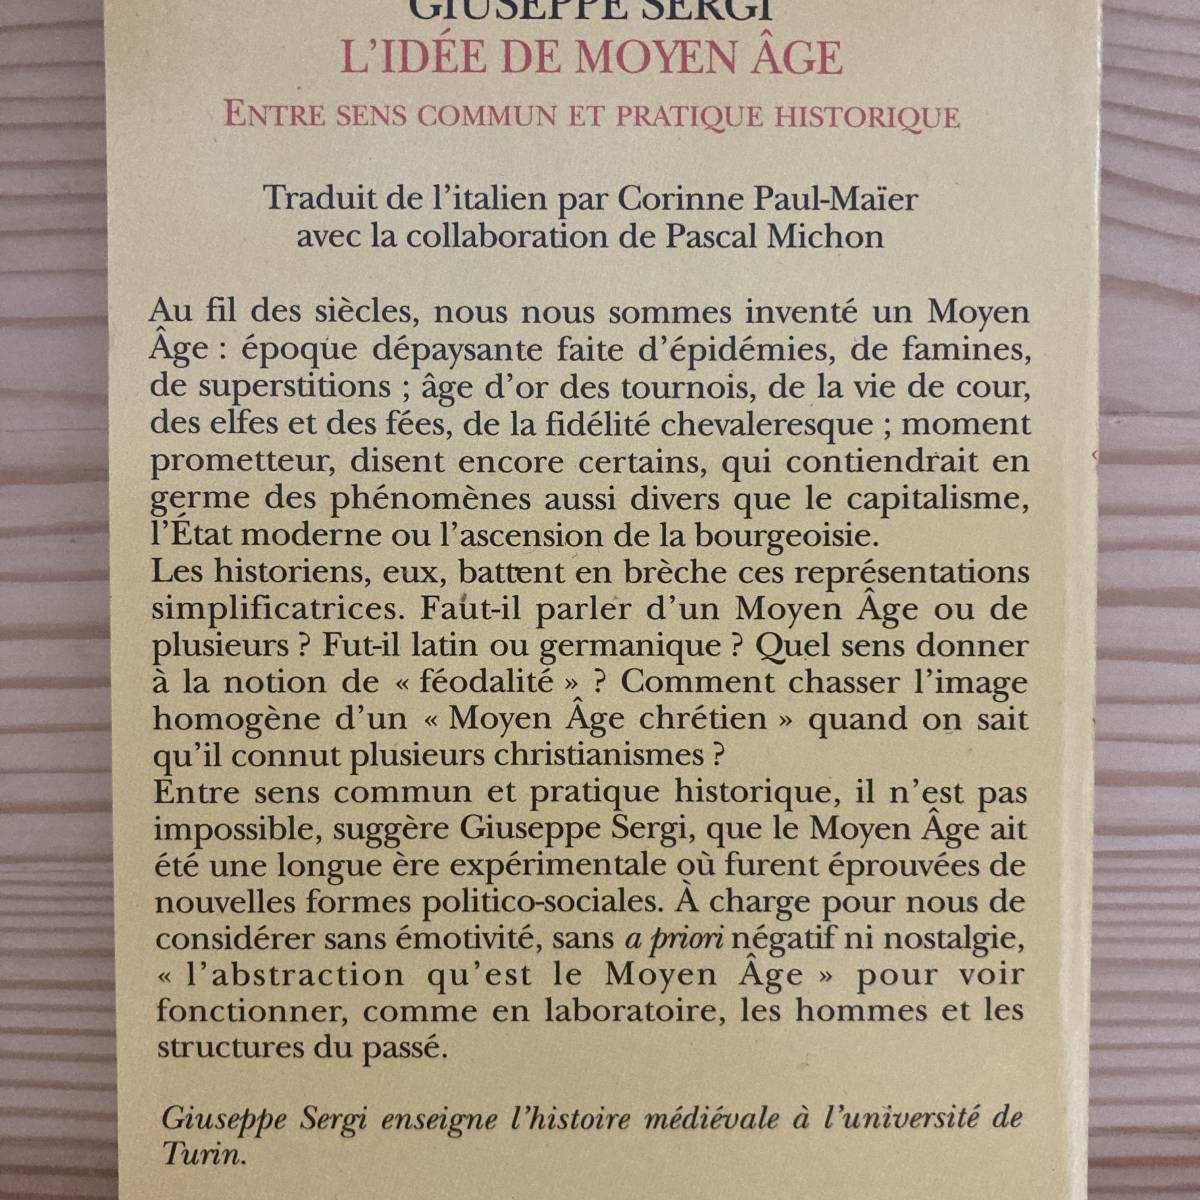 【仏語洋書】L'IDEE DE MOYEN AGE / ジュゼッペ・セルギ Giuseppe Sergi（著）_画像2